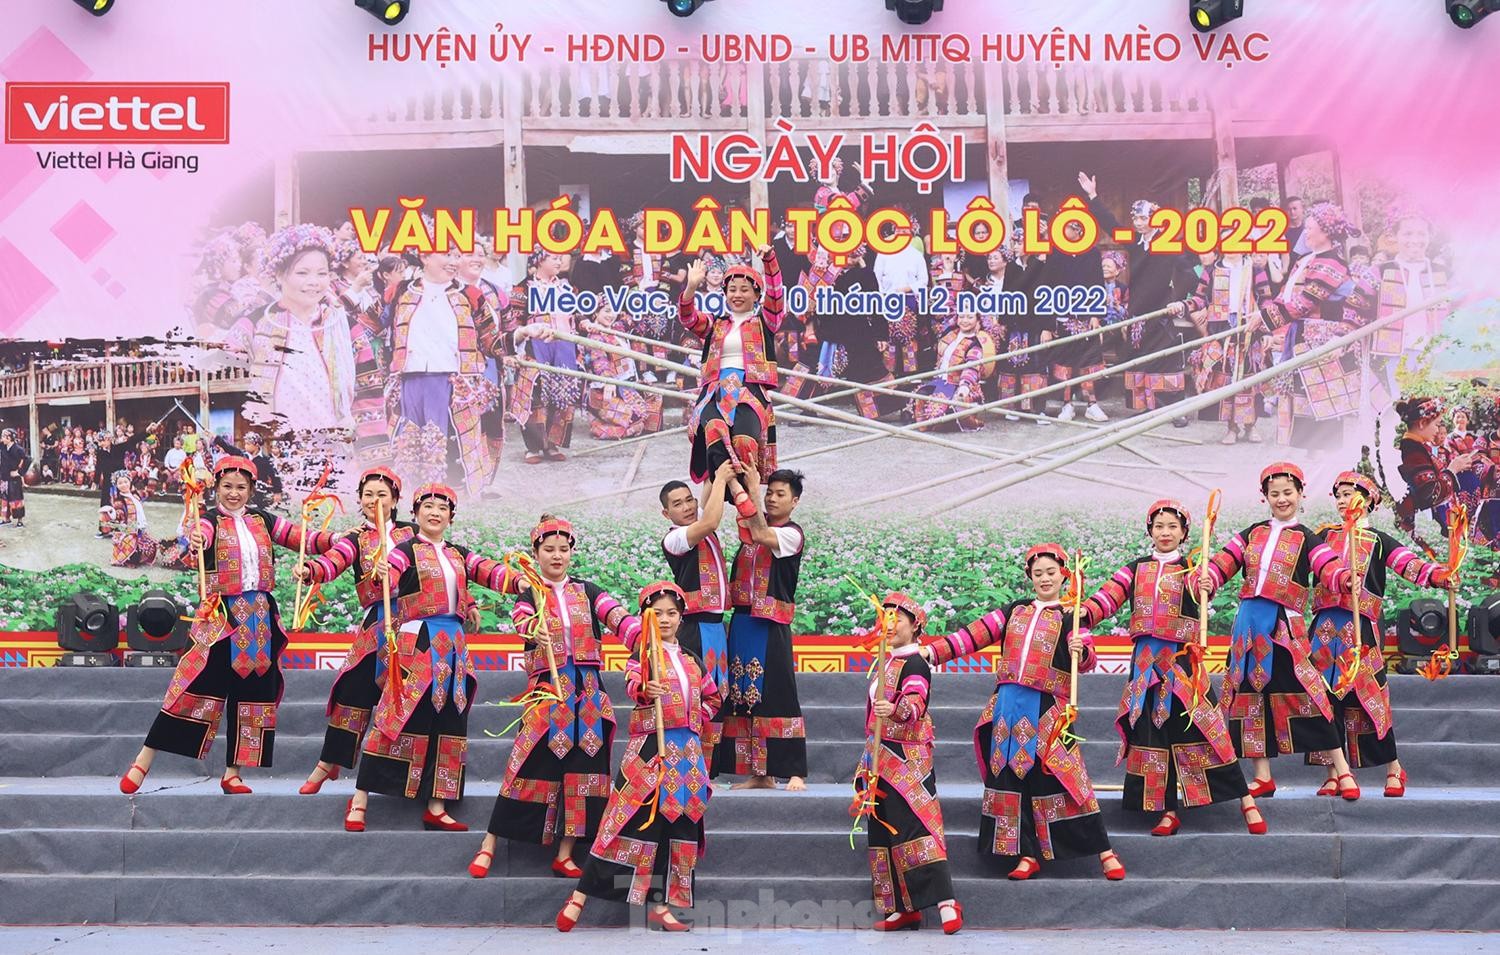 Điệu Hát giao duyên do các nghệ nhân xã Lũng Cú, huyện Đồng Văn thực hiện.